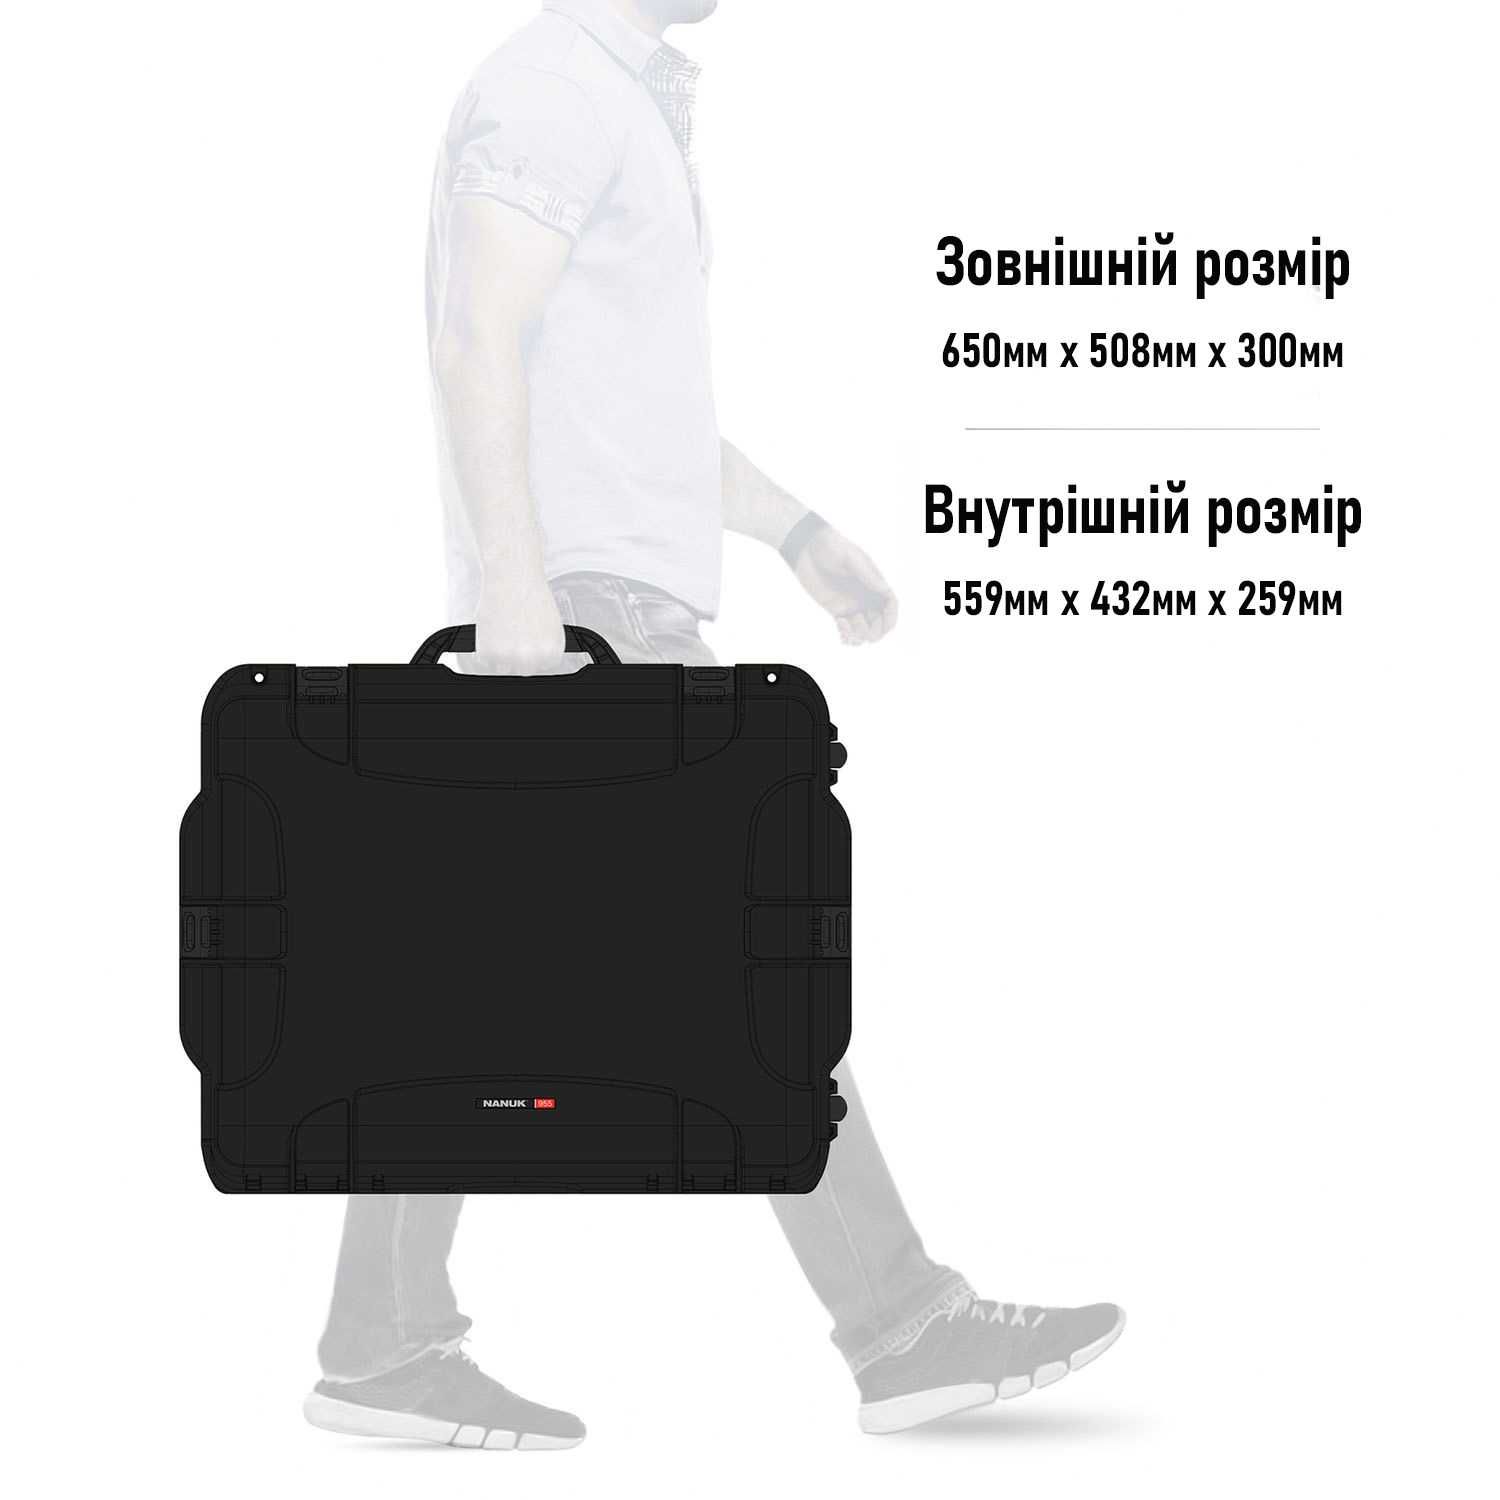 Новый кейс Nanuk 955 с органайзером чемодан защитный кофр Пеликан Peli